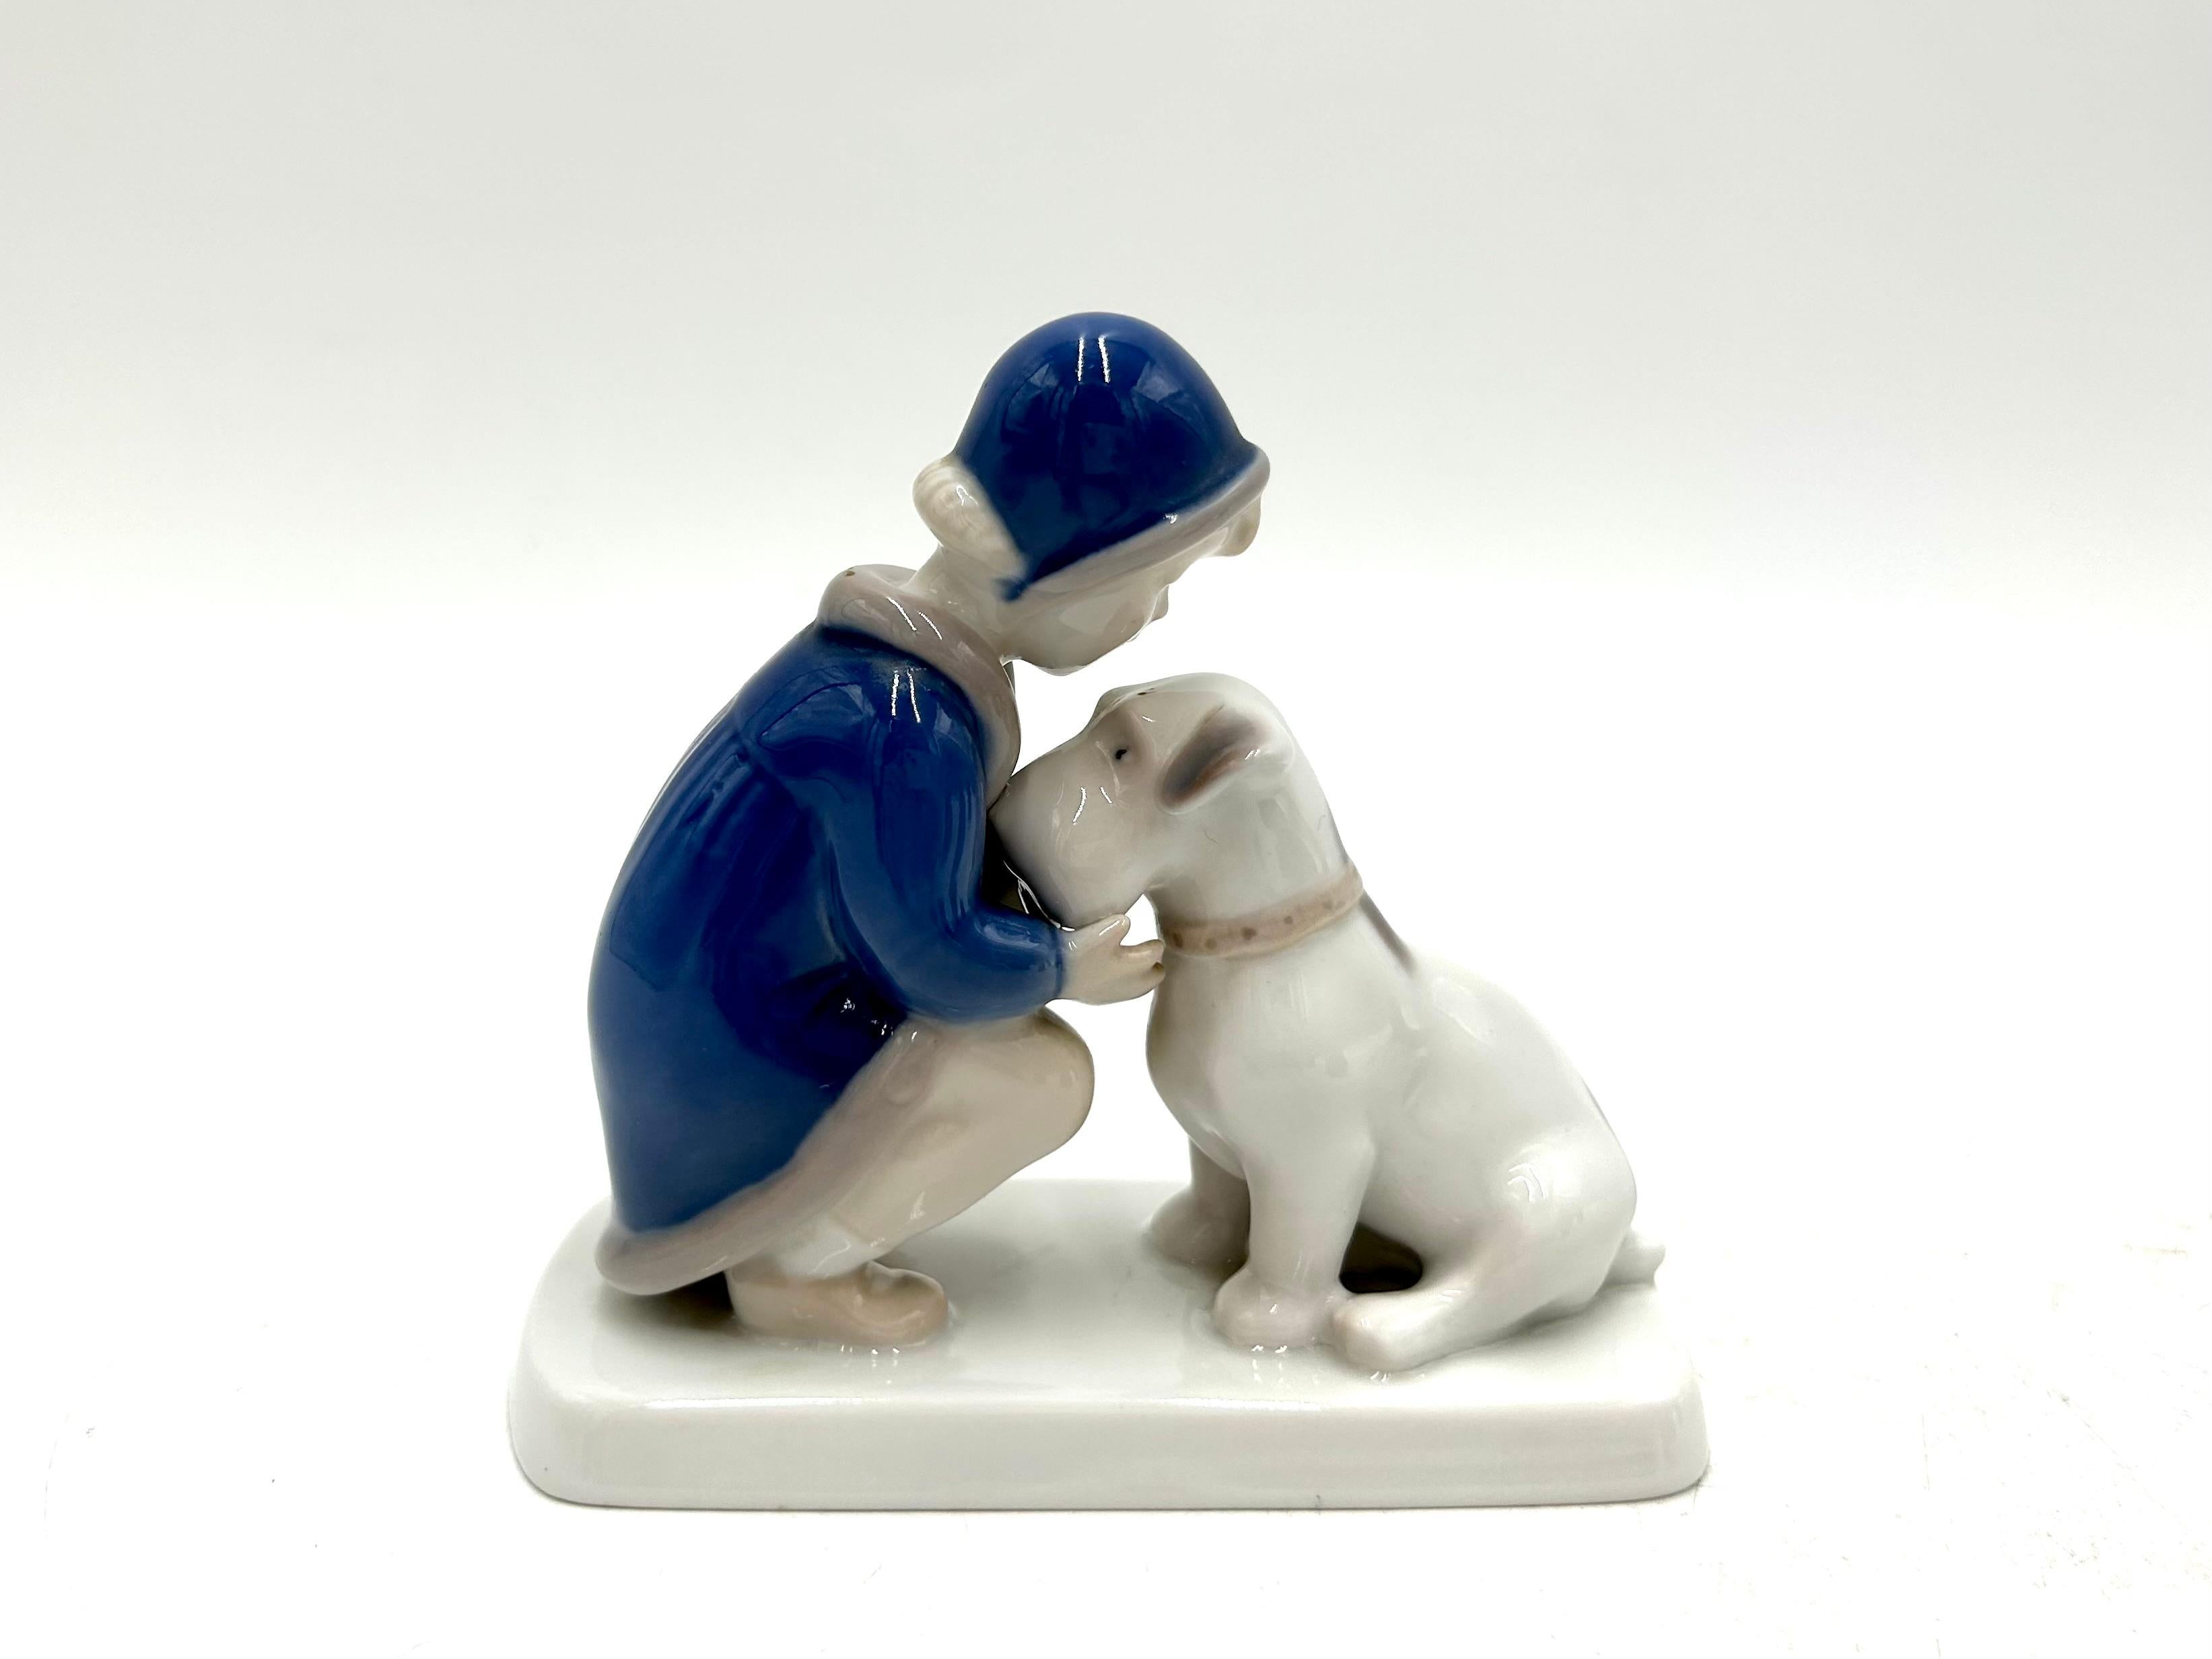 Scandinavian Modern Porcelain Figurine of a Girl with a Dog, Bing & Grondahl, Denmark, 1950s